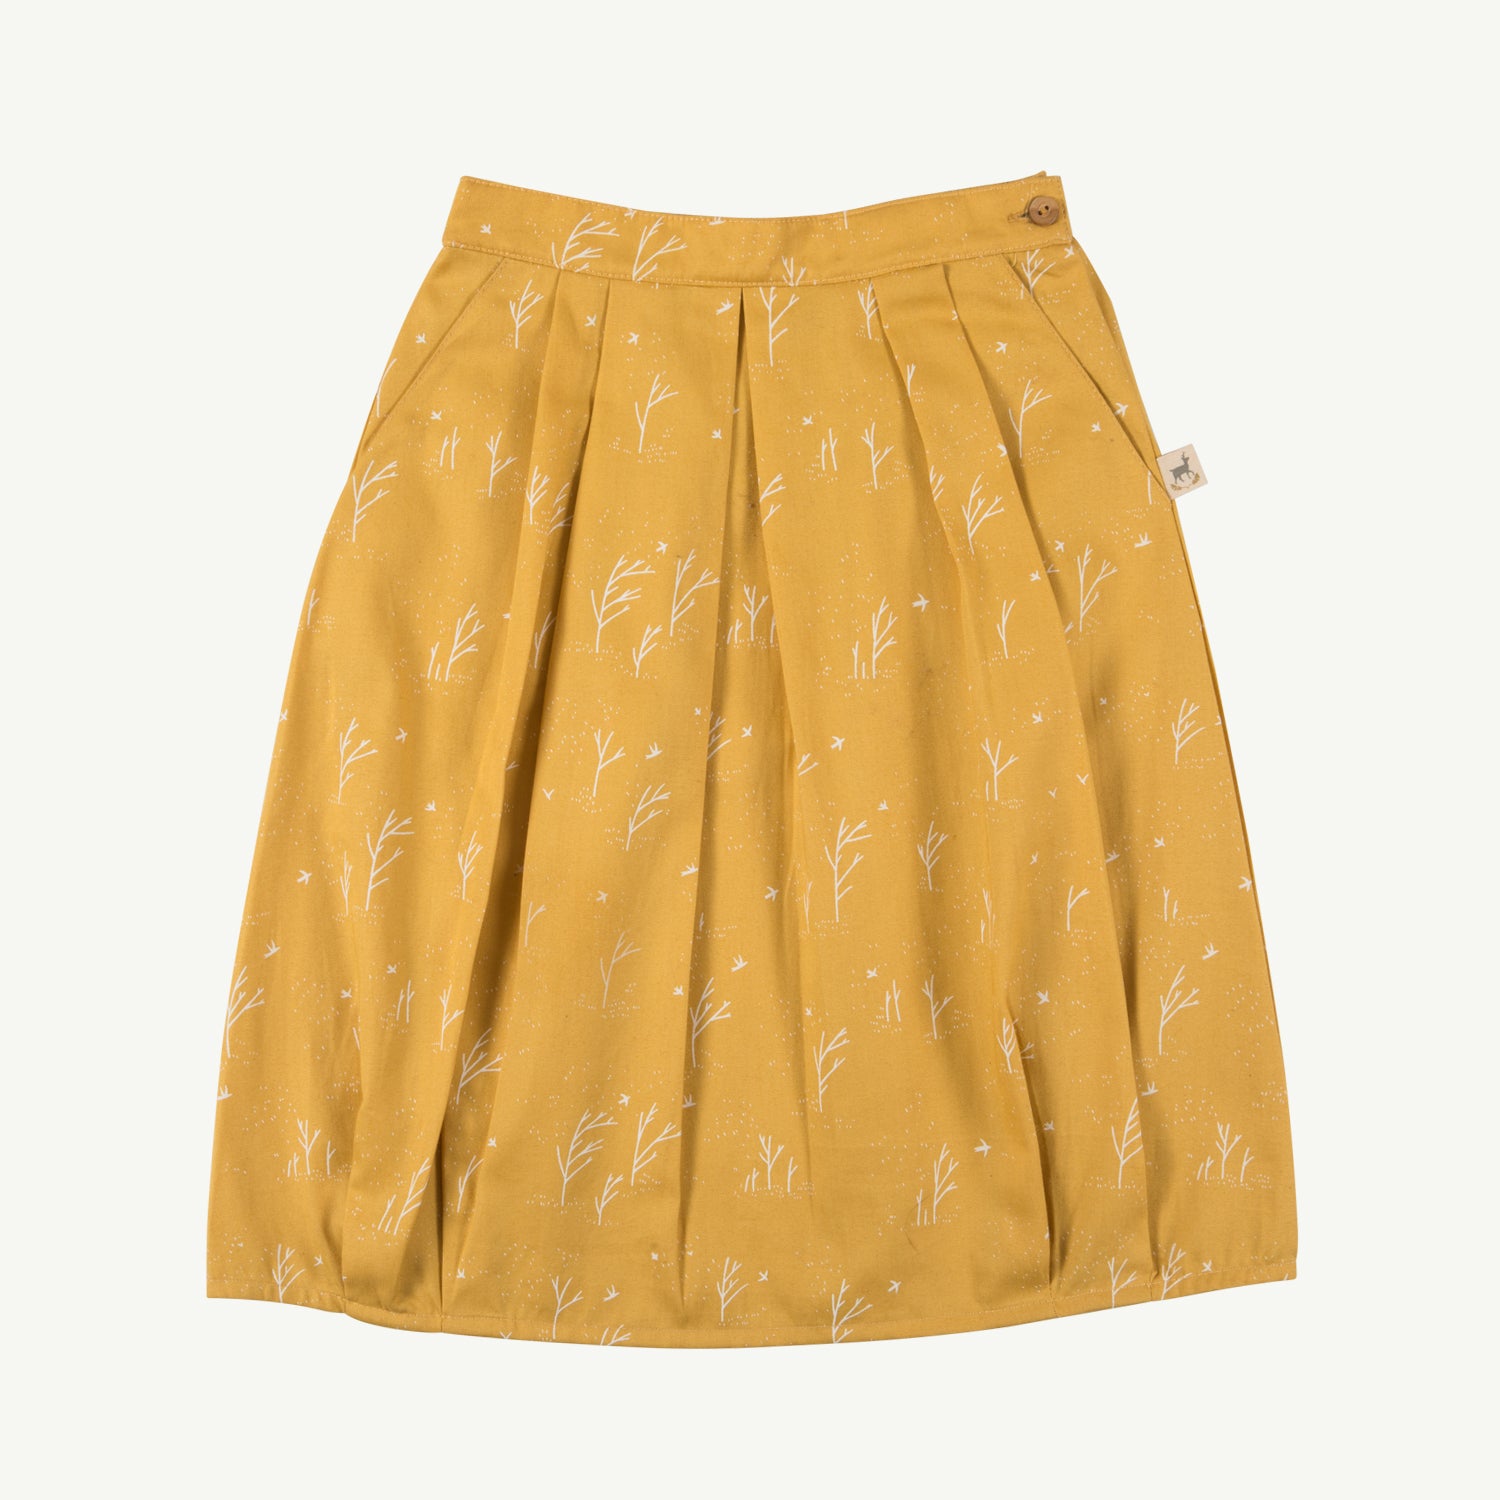 'winter storm' nugget gold woven skirt